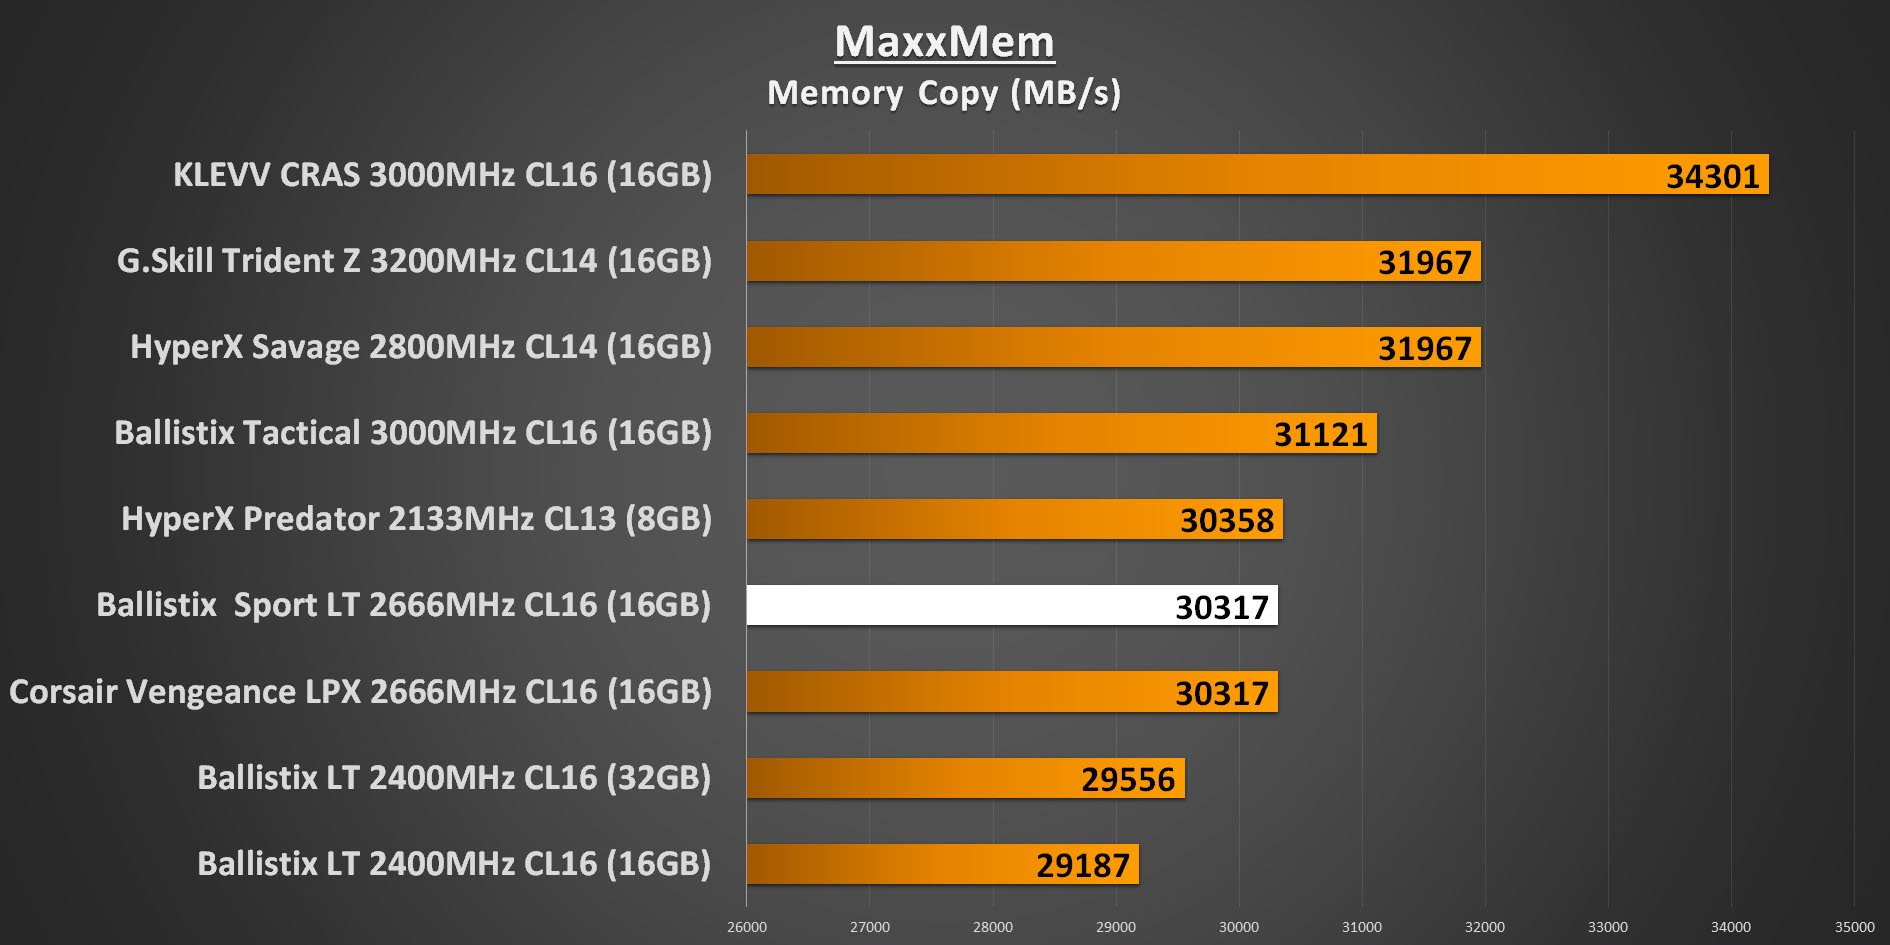 Ballistix Sport LT 2666MHz - MaxxMem Memory Copy Performance